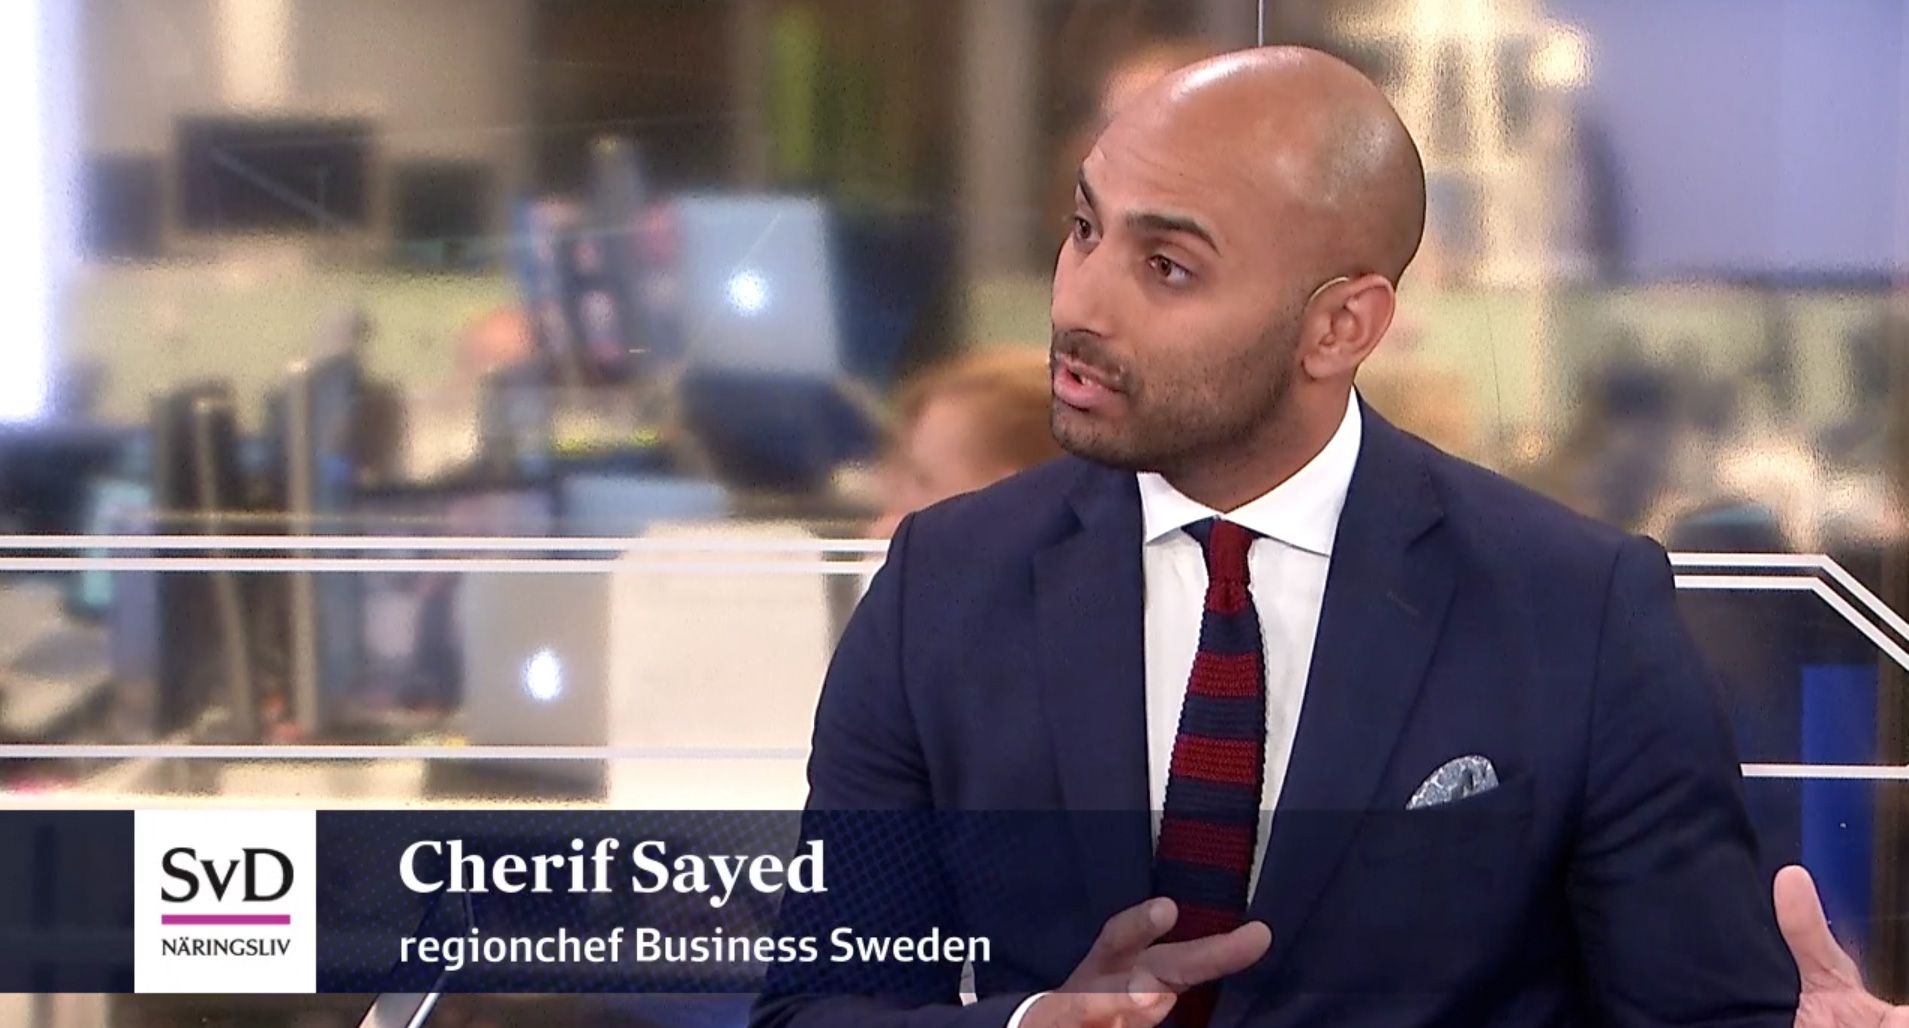 Mellanöstern: ”Svenska bolag har tappat 25 procent”